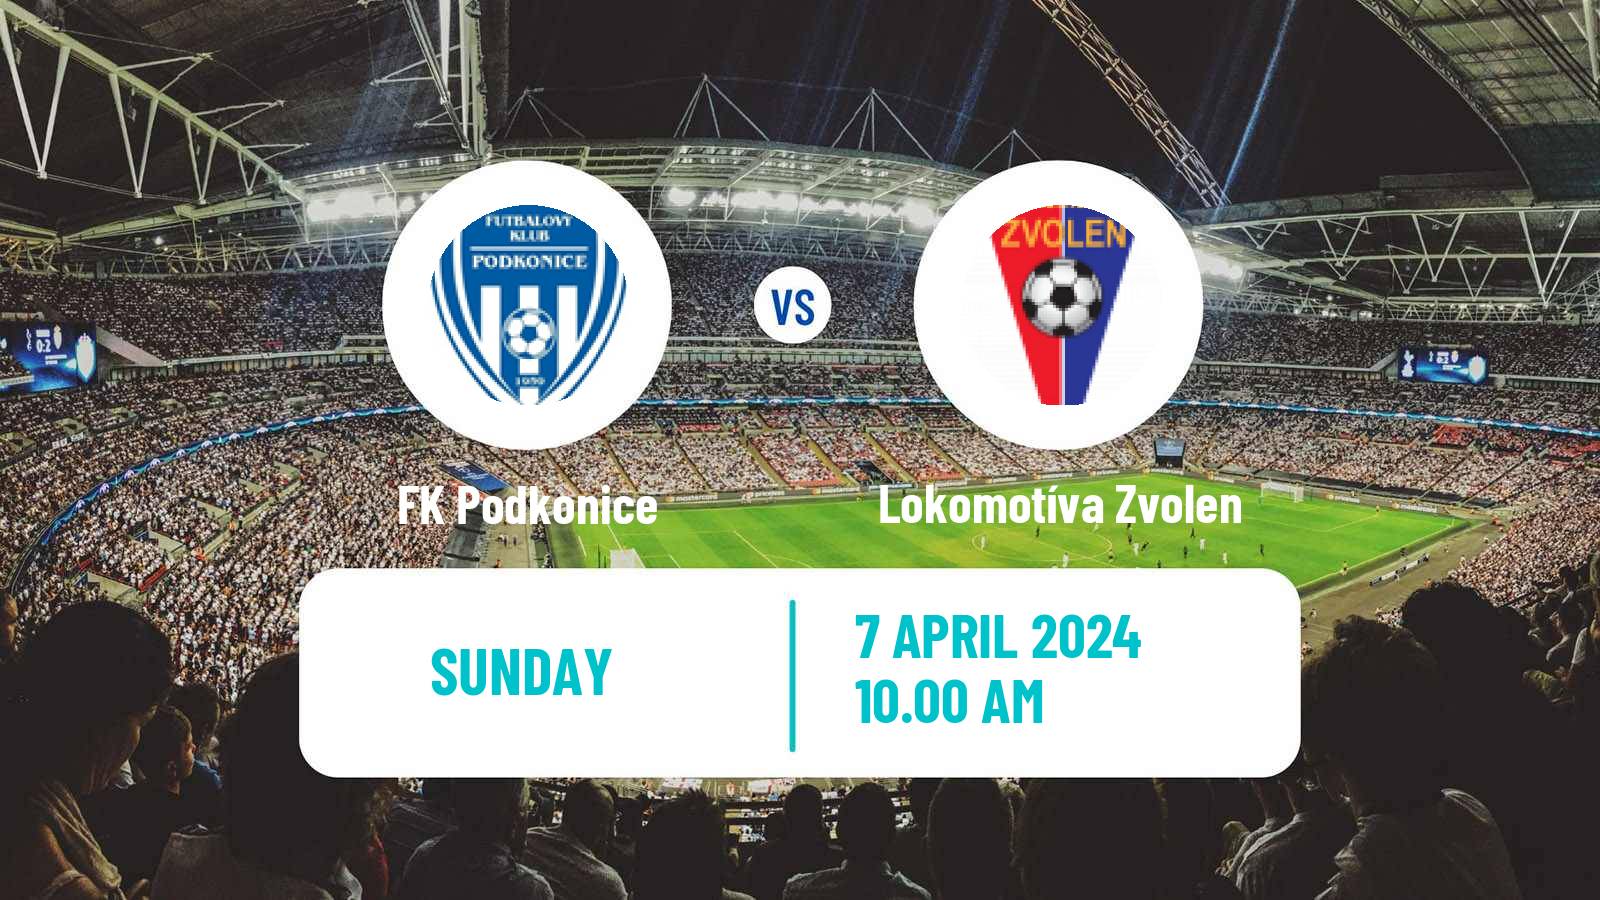 Soccer Slovak 3 Liga West Podkonice - Lokomotíva Zvolen